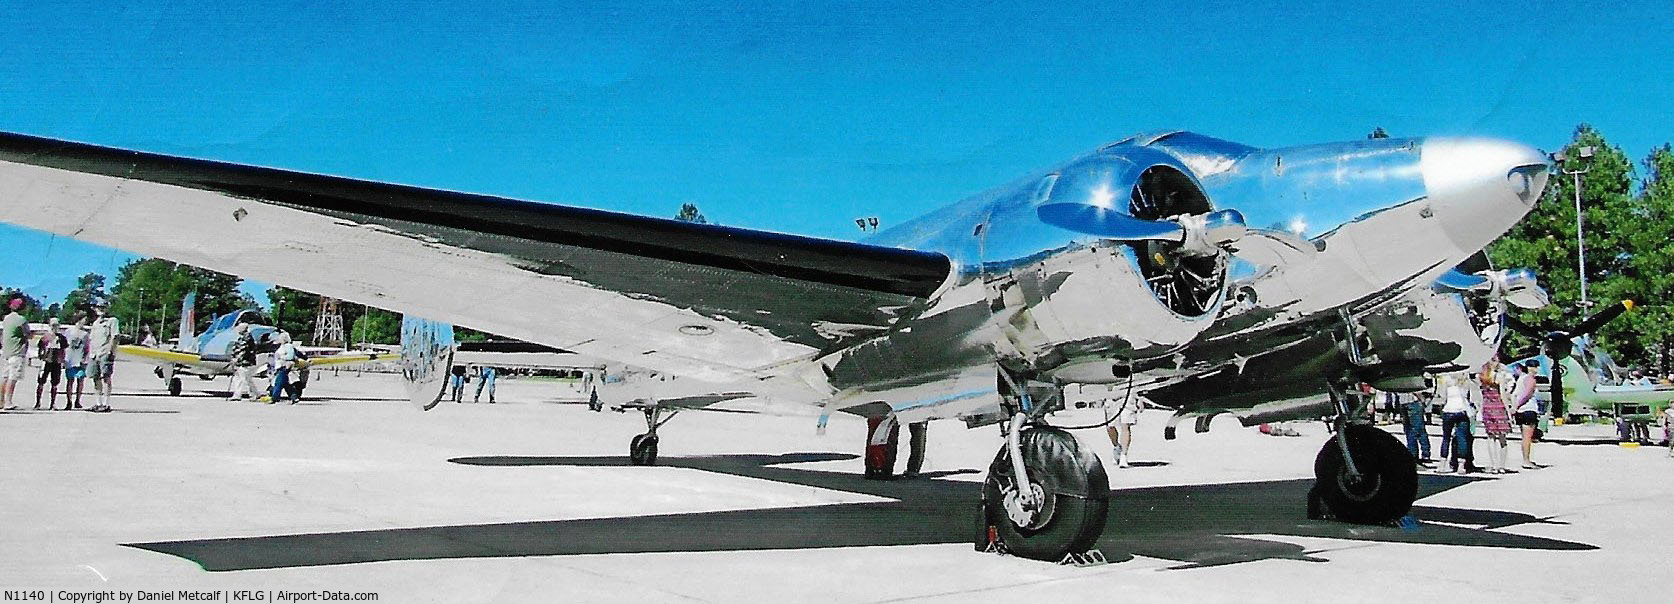 N1140, 1946 Beech D18S C/N A-129, Thunder over Flagstaff 2015